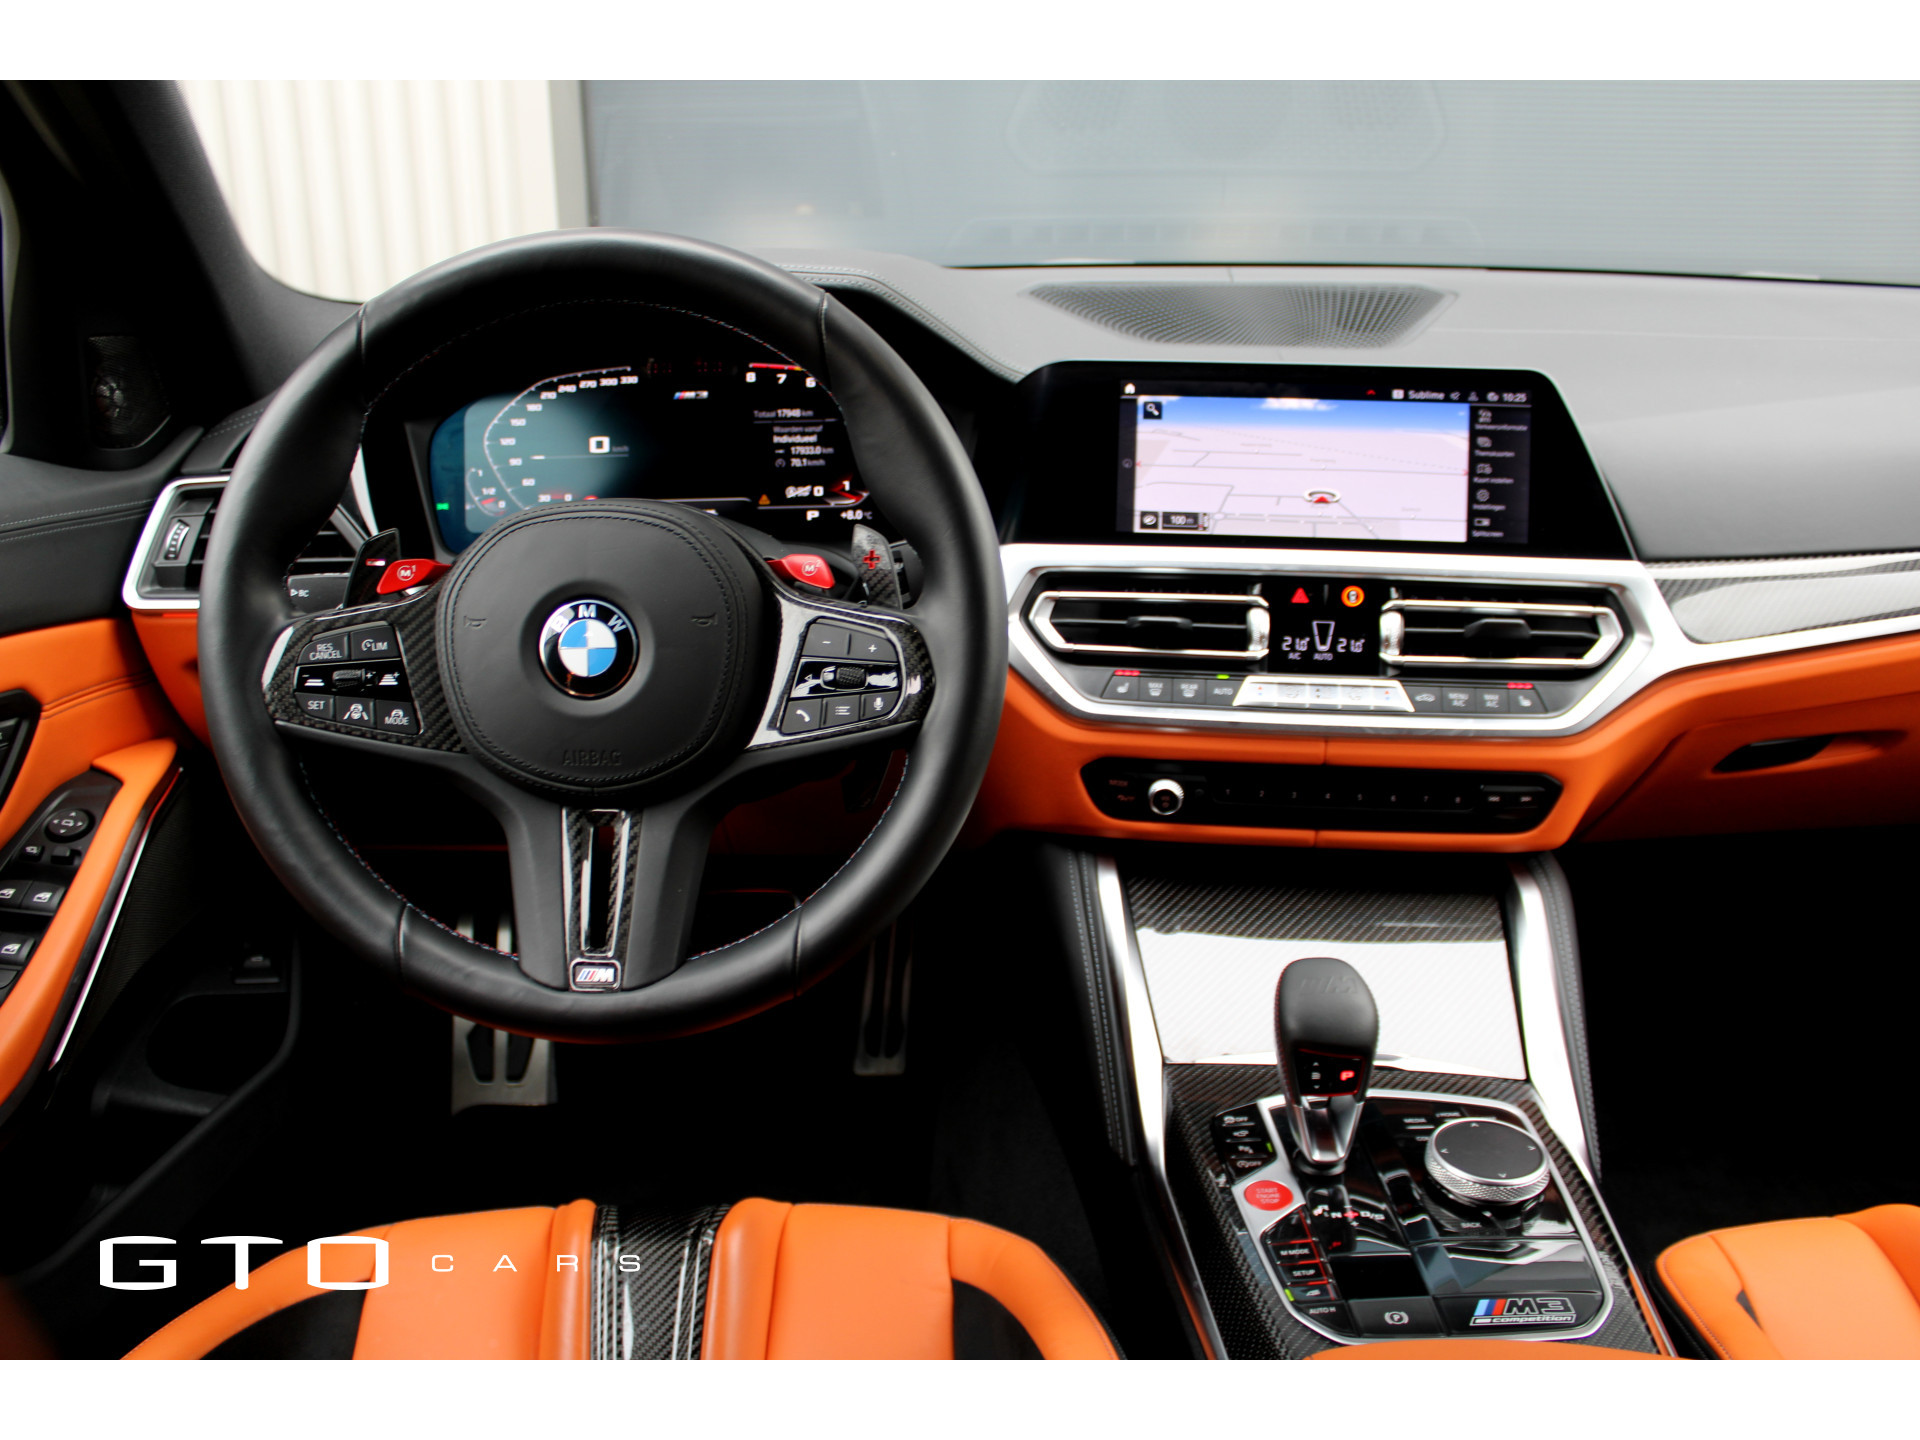 BMW 3 Serie